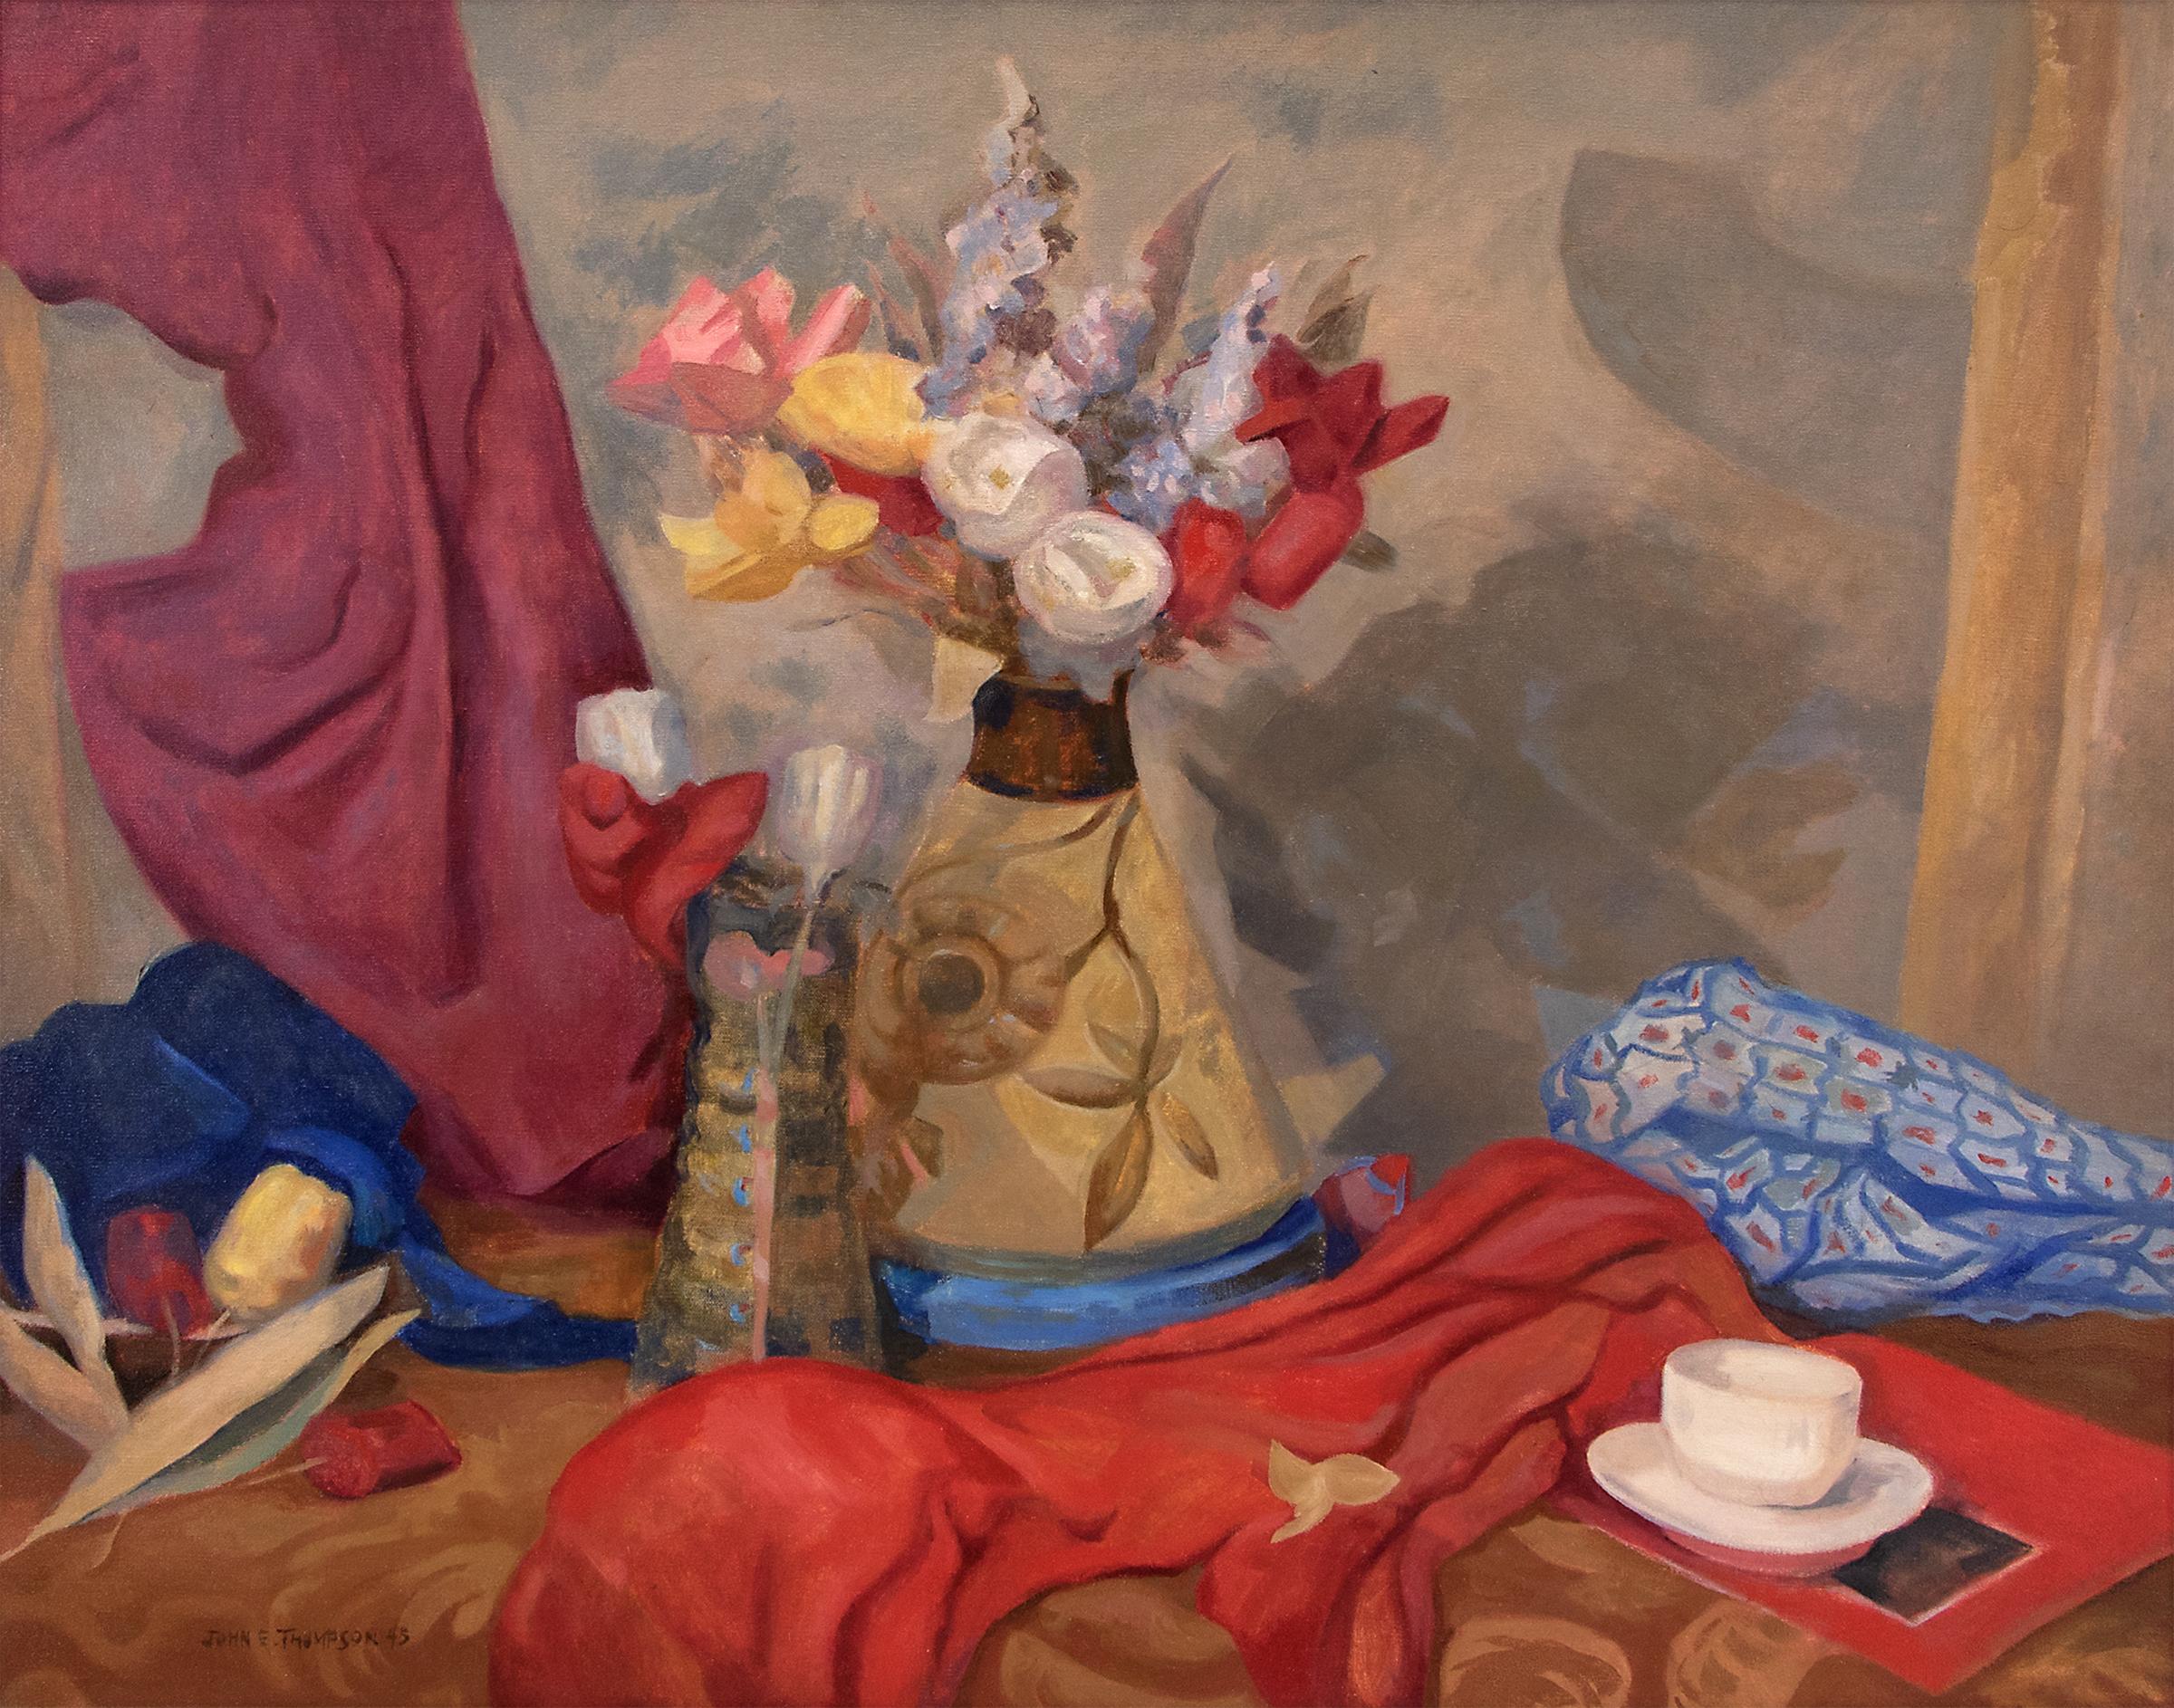 1940er Jahre Stillleben mit Blumen Ölgemälde, Rot, Gelb, Blau, Lila – Painting von John Edward Thompson